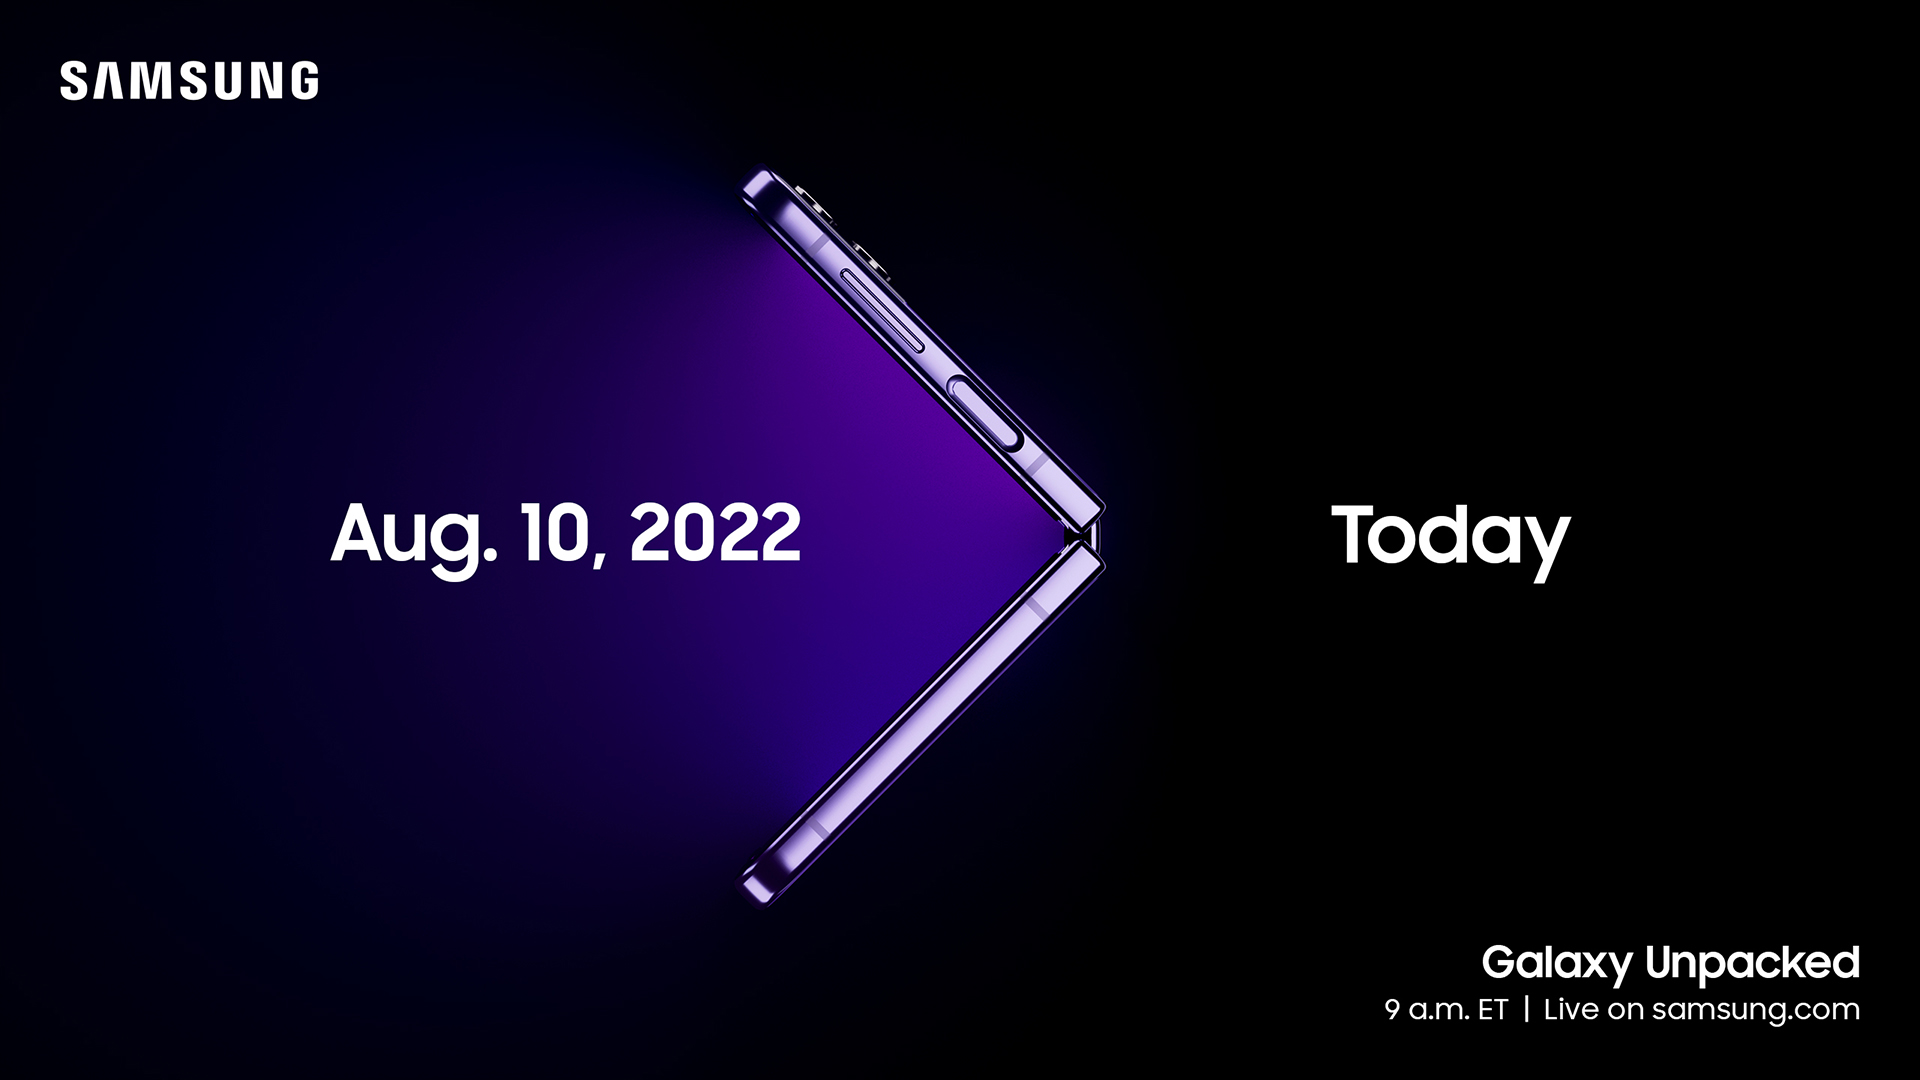 Samsung Galaxy Unpacked Invite August 2022